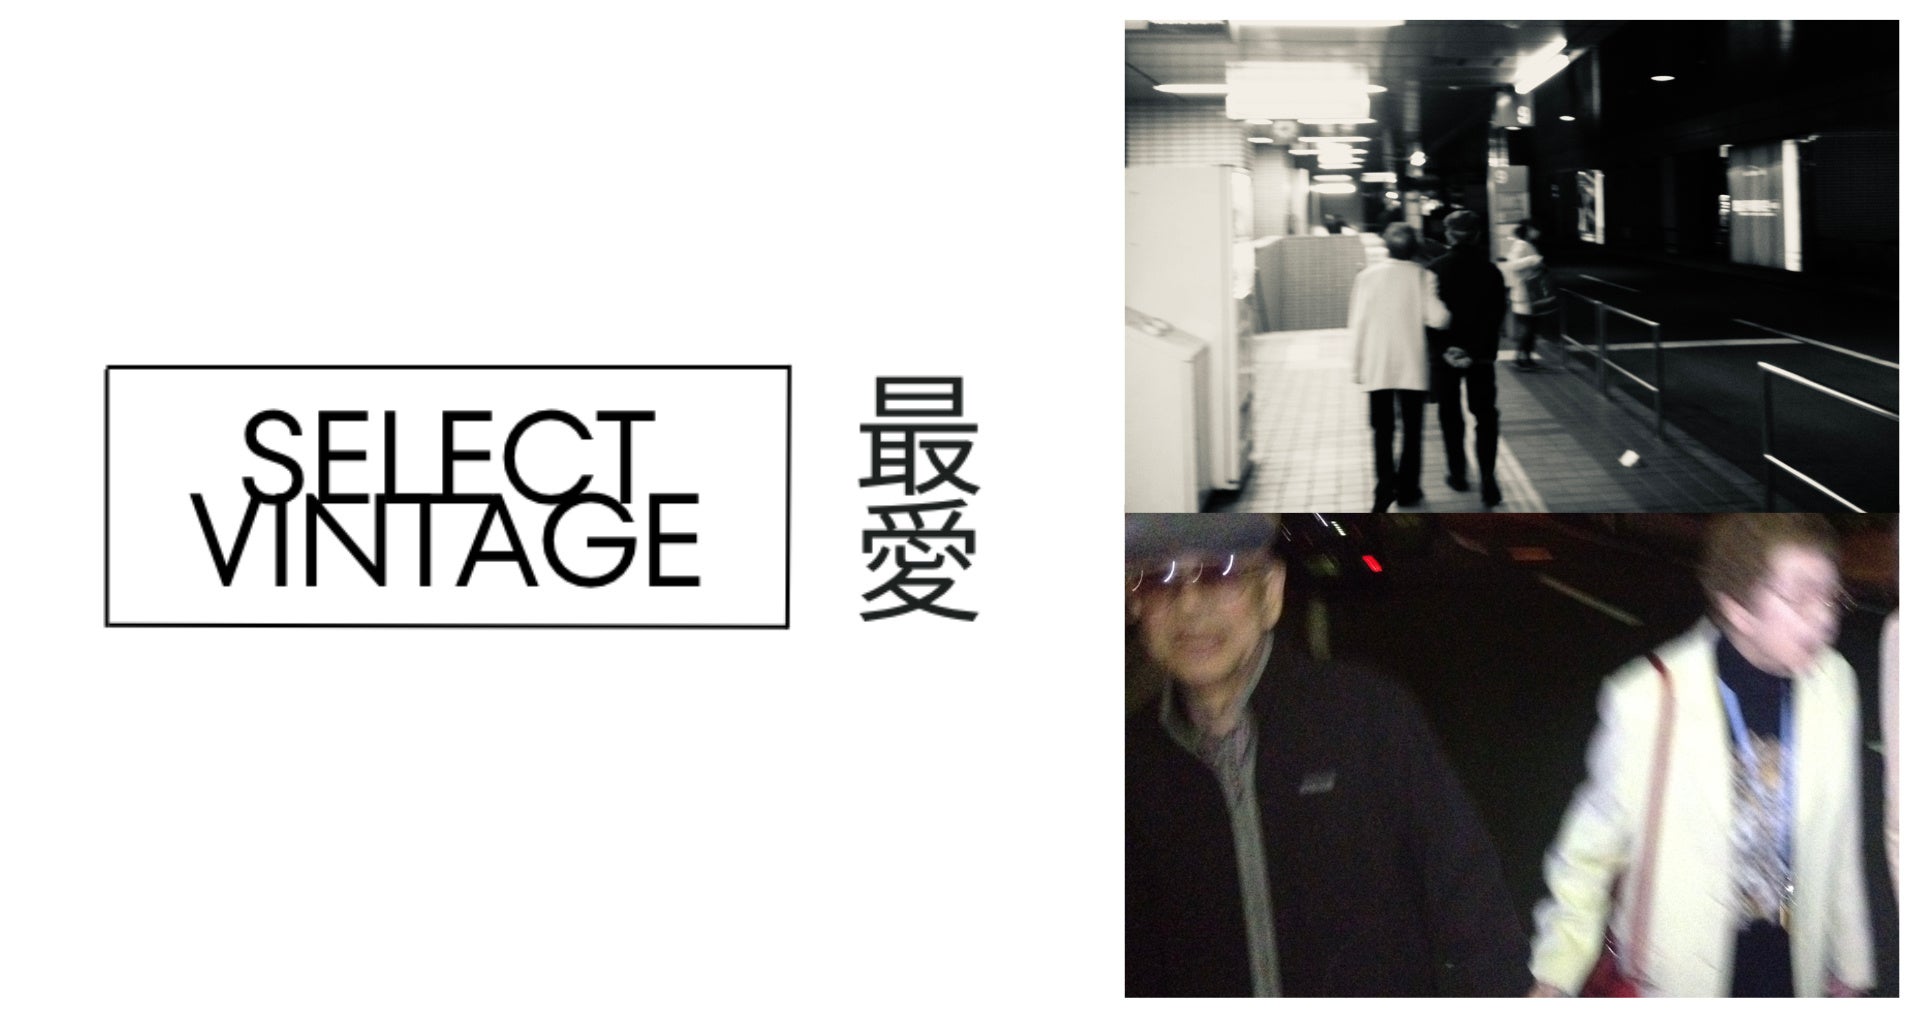 フリーマーケットギャラリー「SELECT VINTAGE 最愛」3/21(火祝)より3日間、原宿でPOPUPを開催のサブ画像1